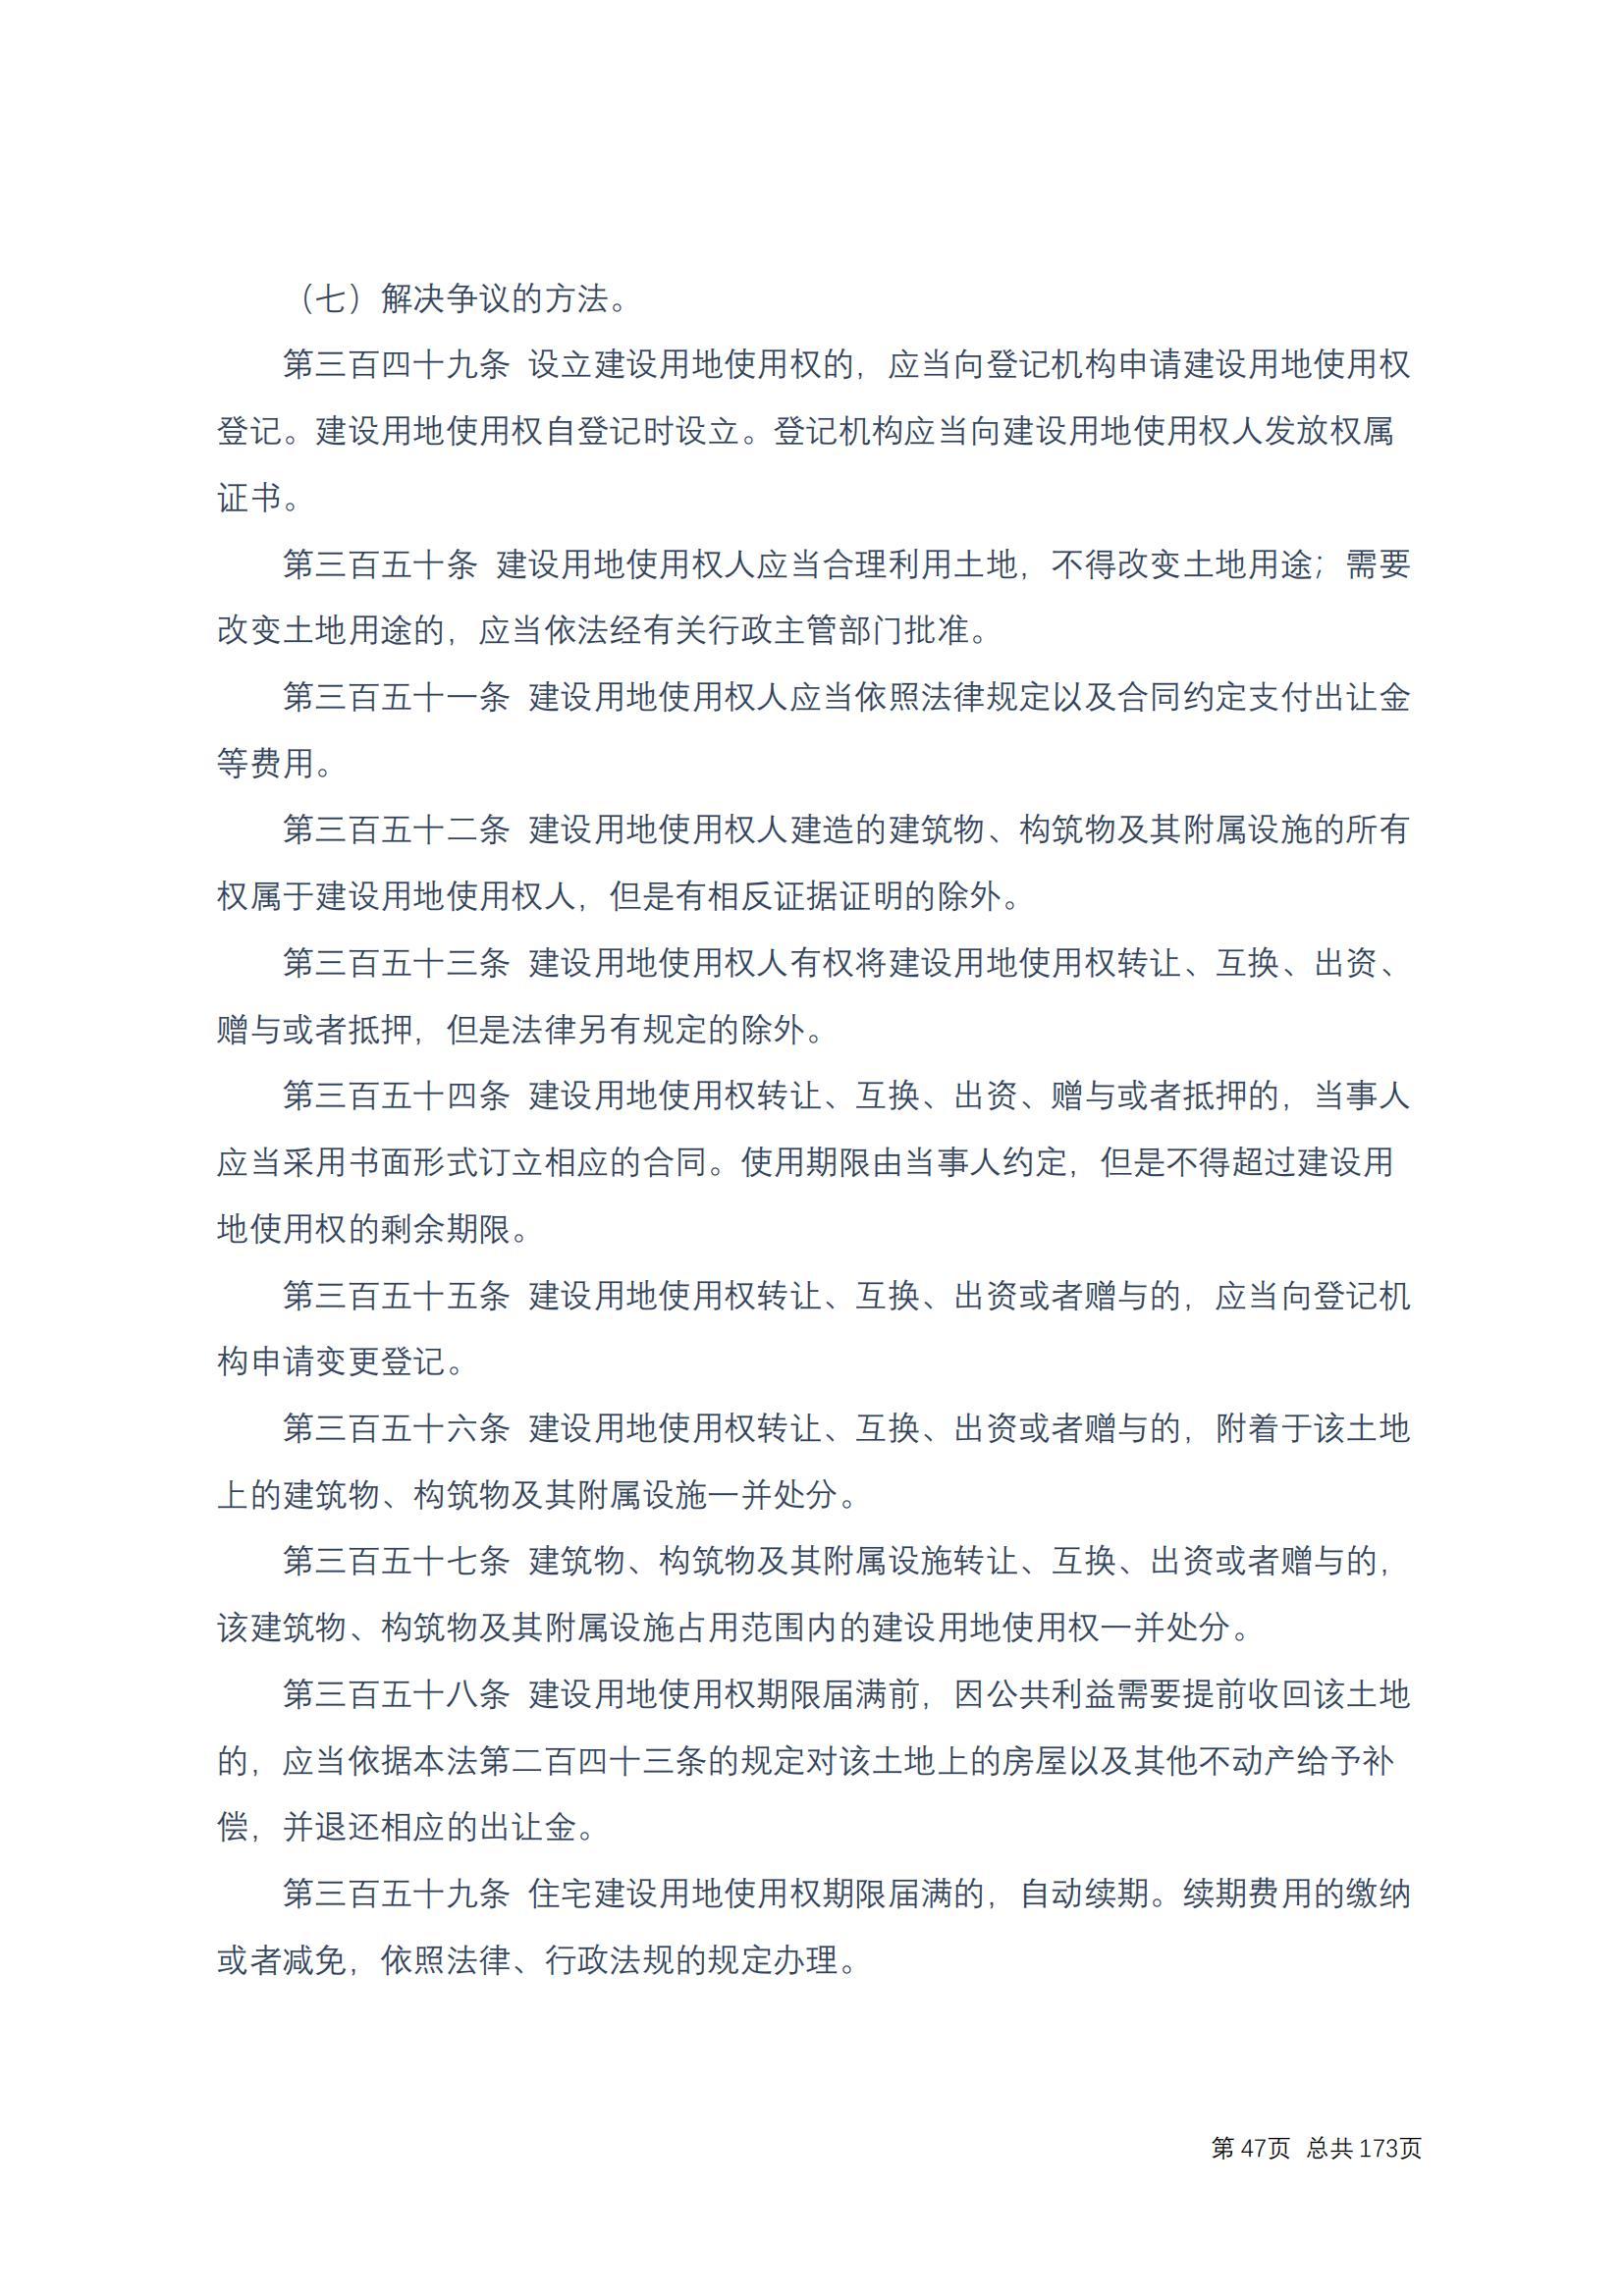 中华人民共和国民法典 修改过_46